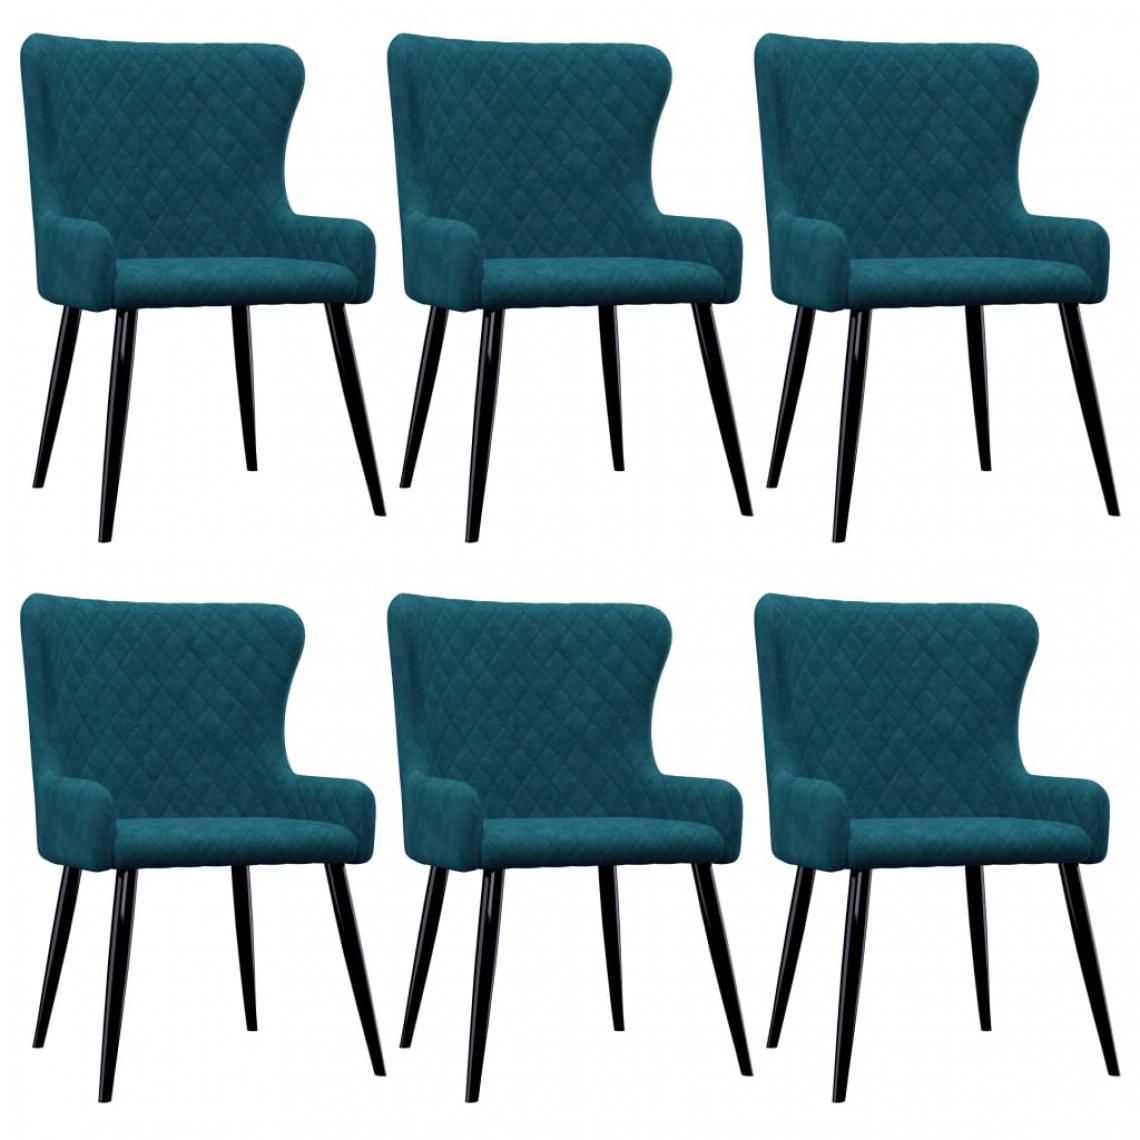 Chunhelife - Chaises de salle à manger 6 pcs Bleu Velours - Chaises